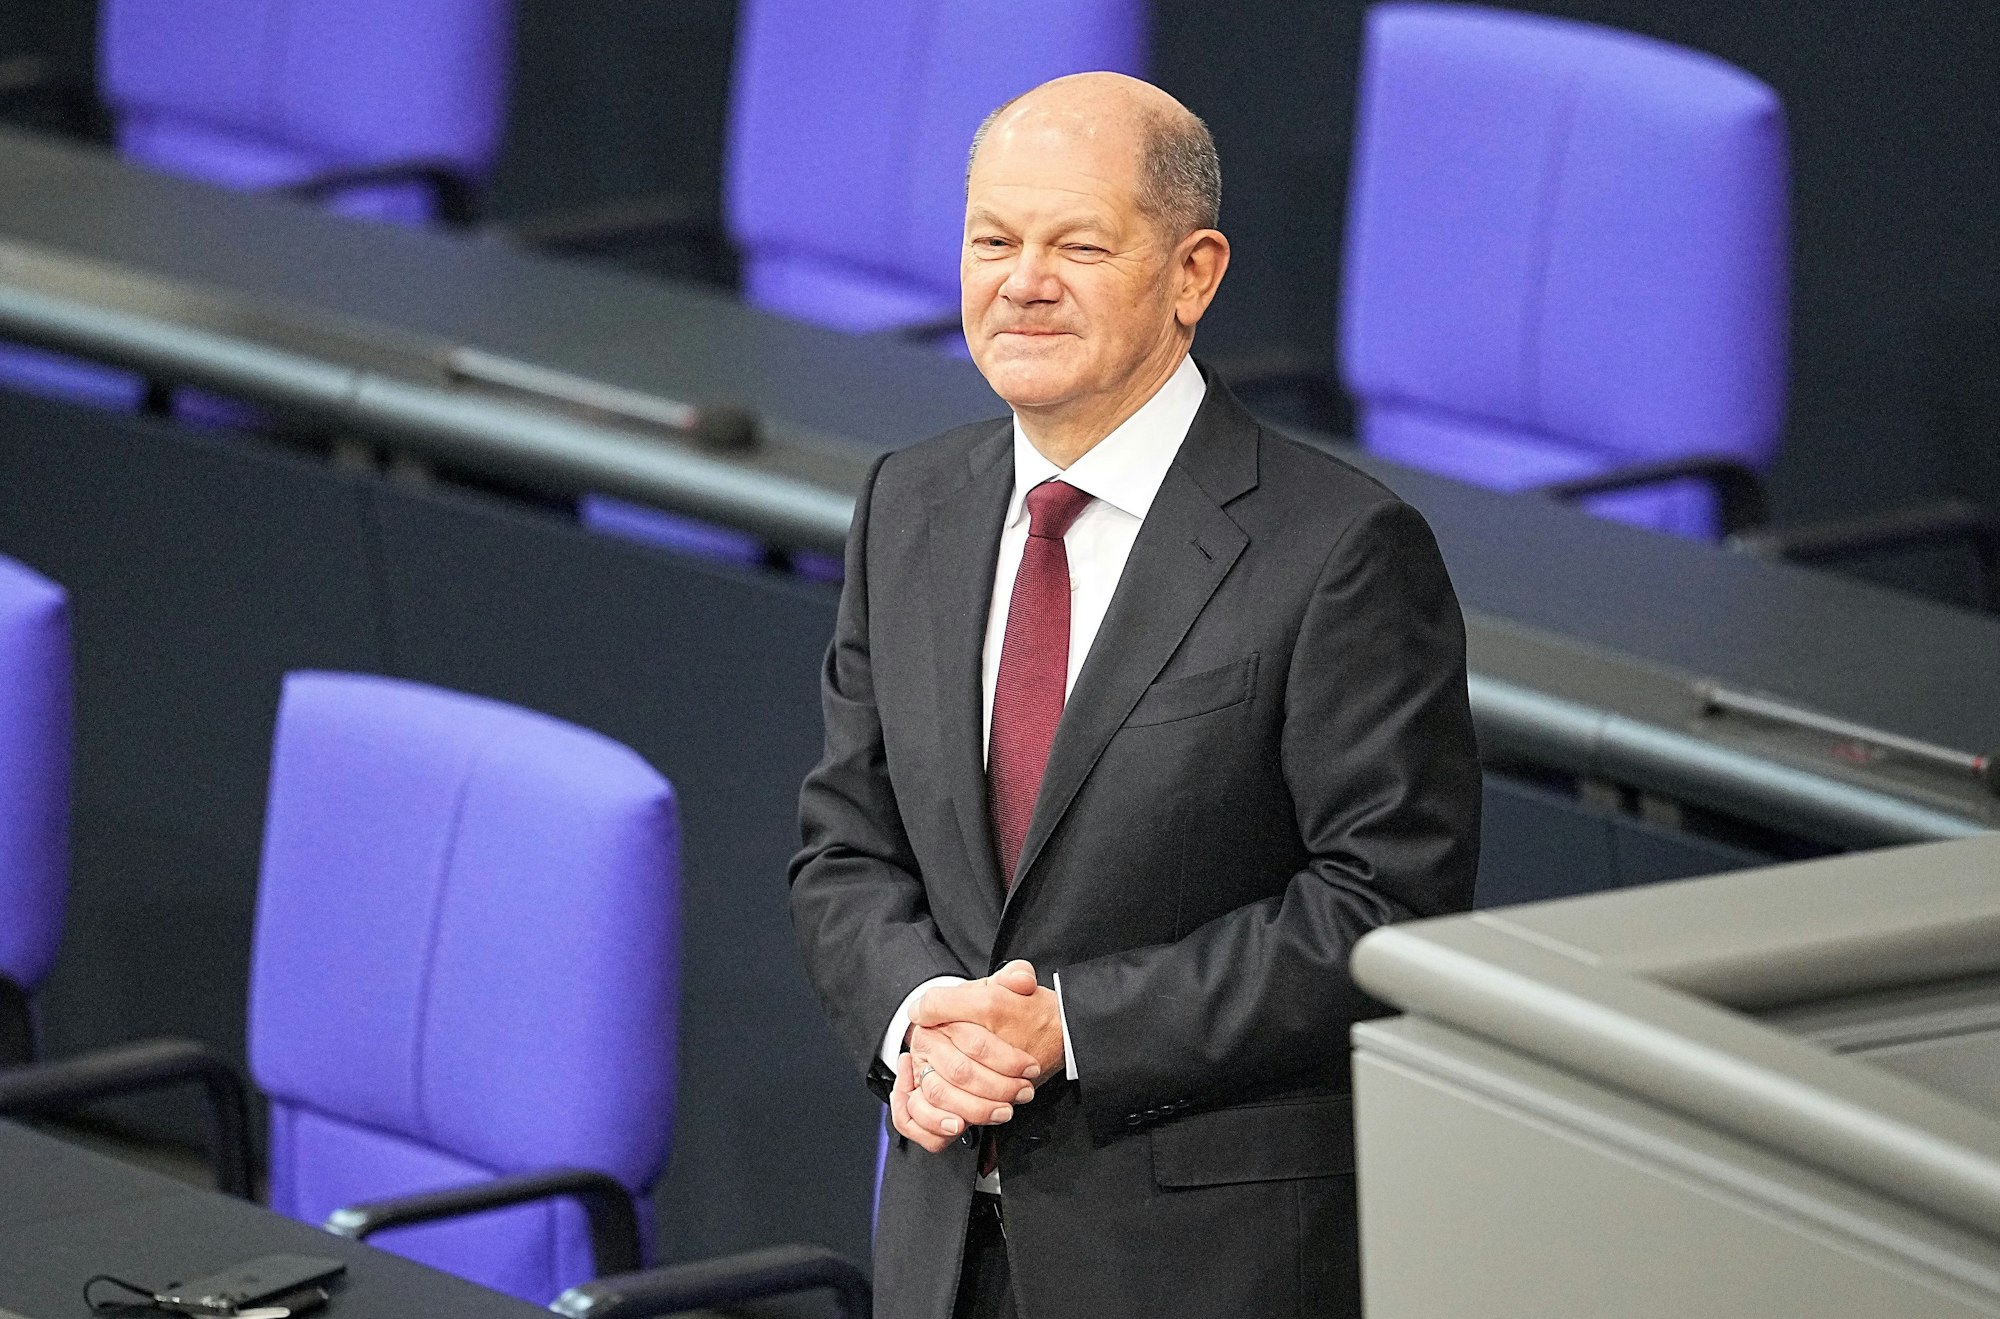 Bundeskanzler Olaf Scholz (SPD) steht am Mittwoch (8. Dezember) alleine an der Regierungsbank nach seiner Vereidigung. Sein Vater Gerhard Scholz hat am Rande der Kanzler-Wahl einiges Privates preisgegeben.